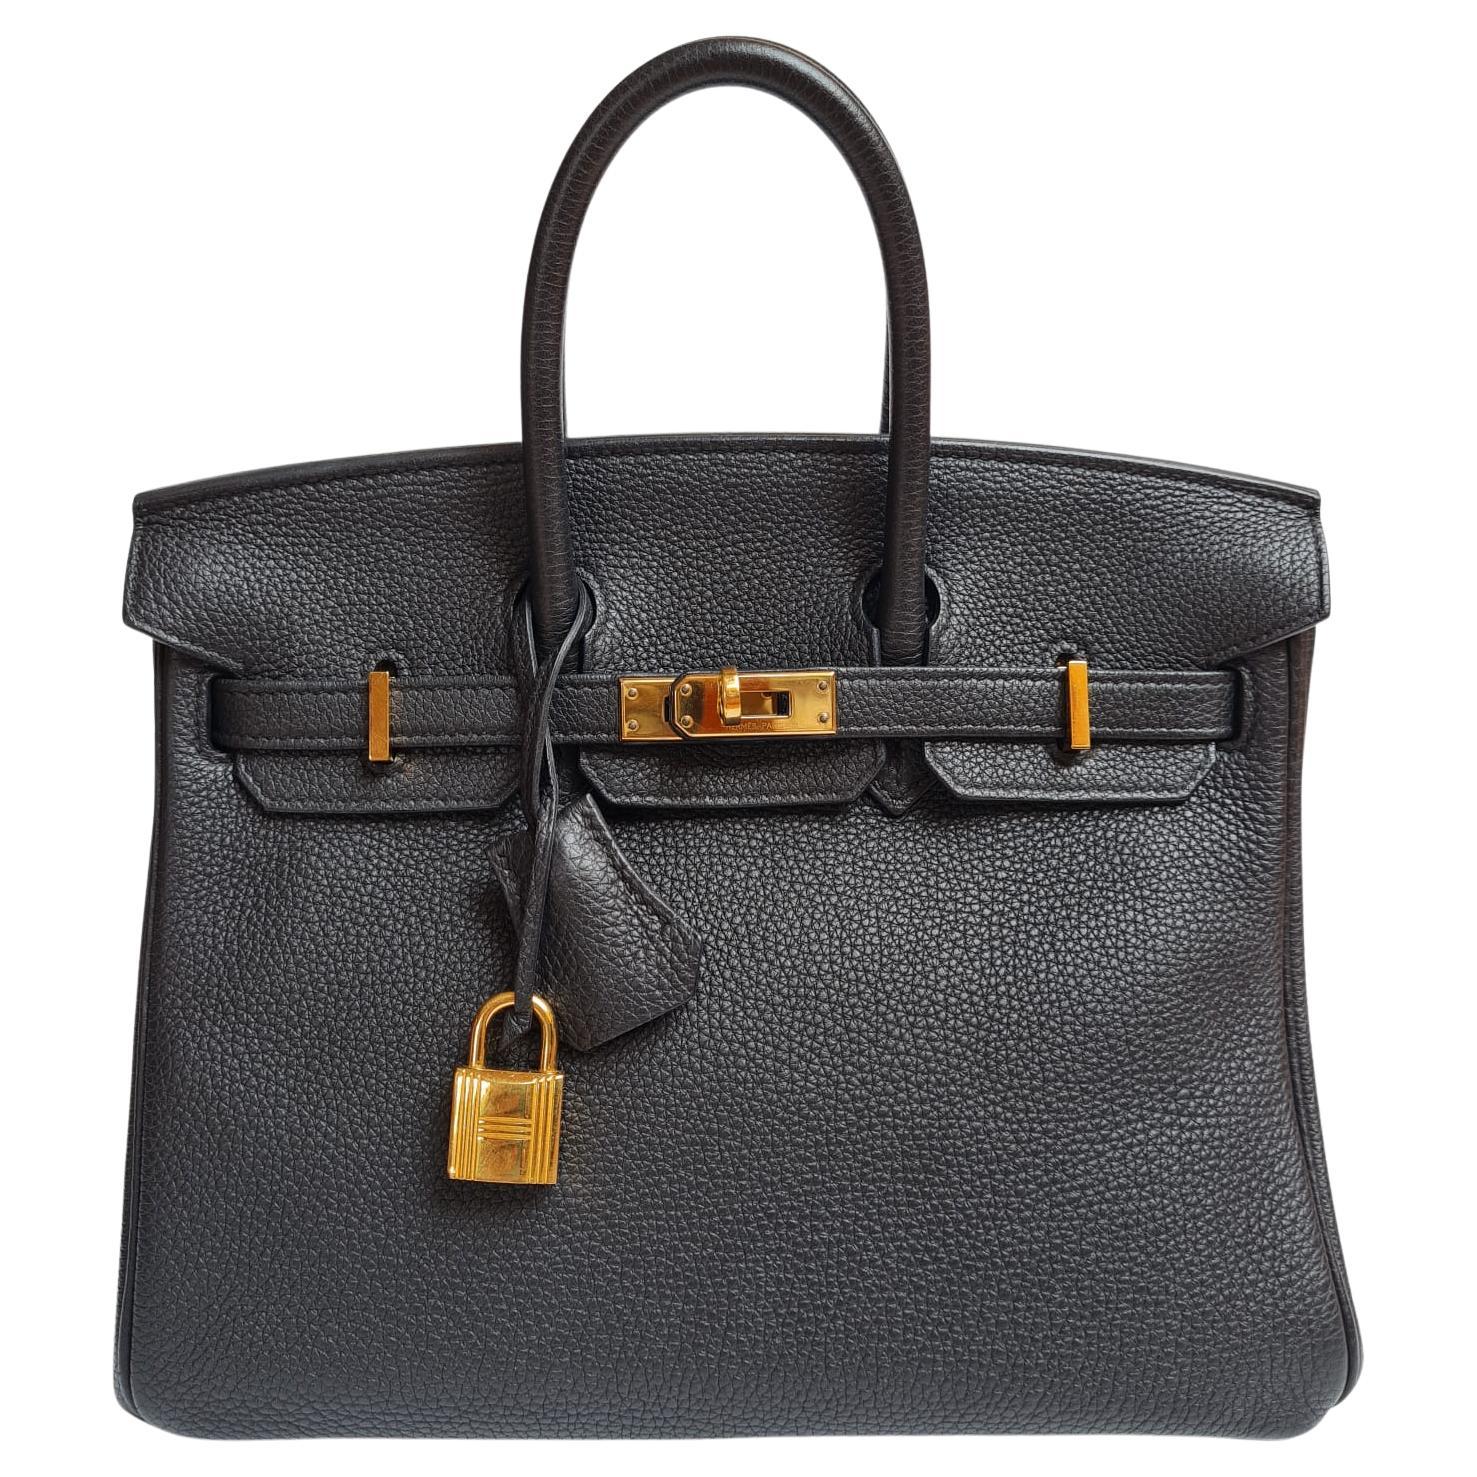 Hermes Birkin 25 Togo Black GHW Bag For Sale